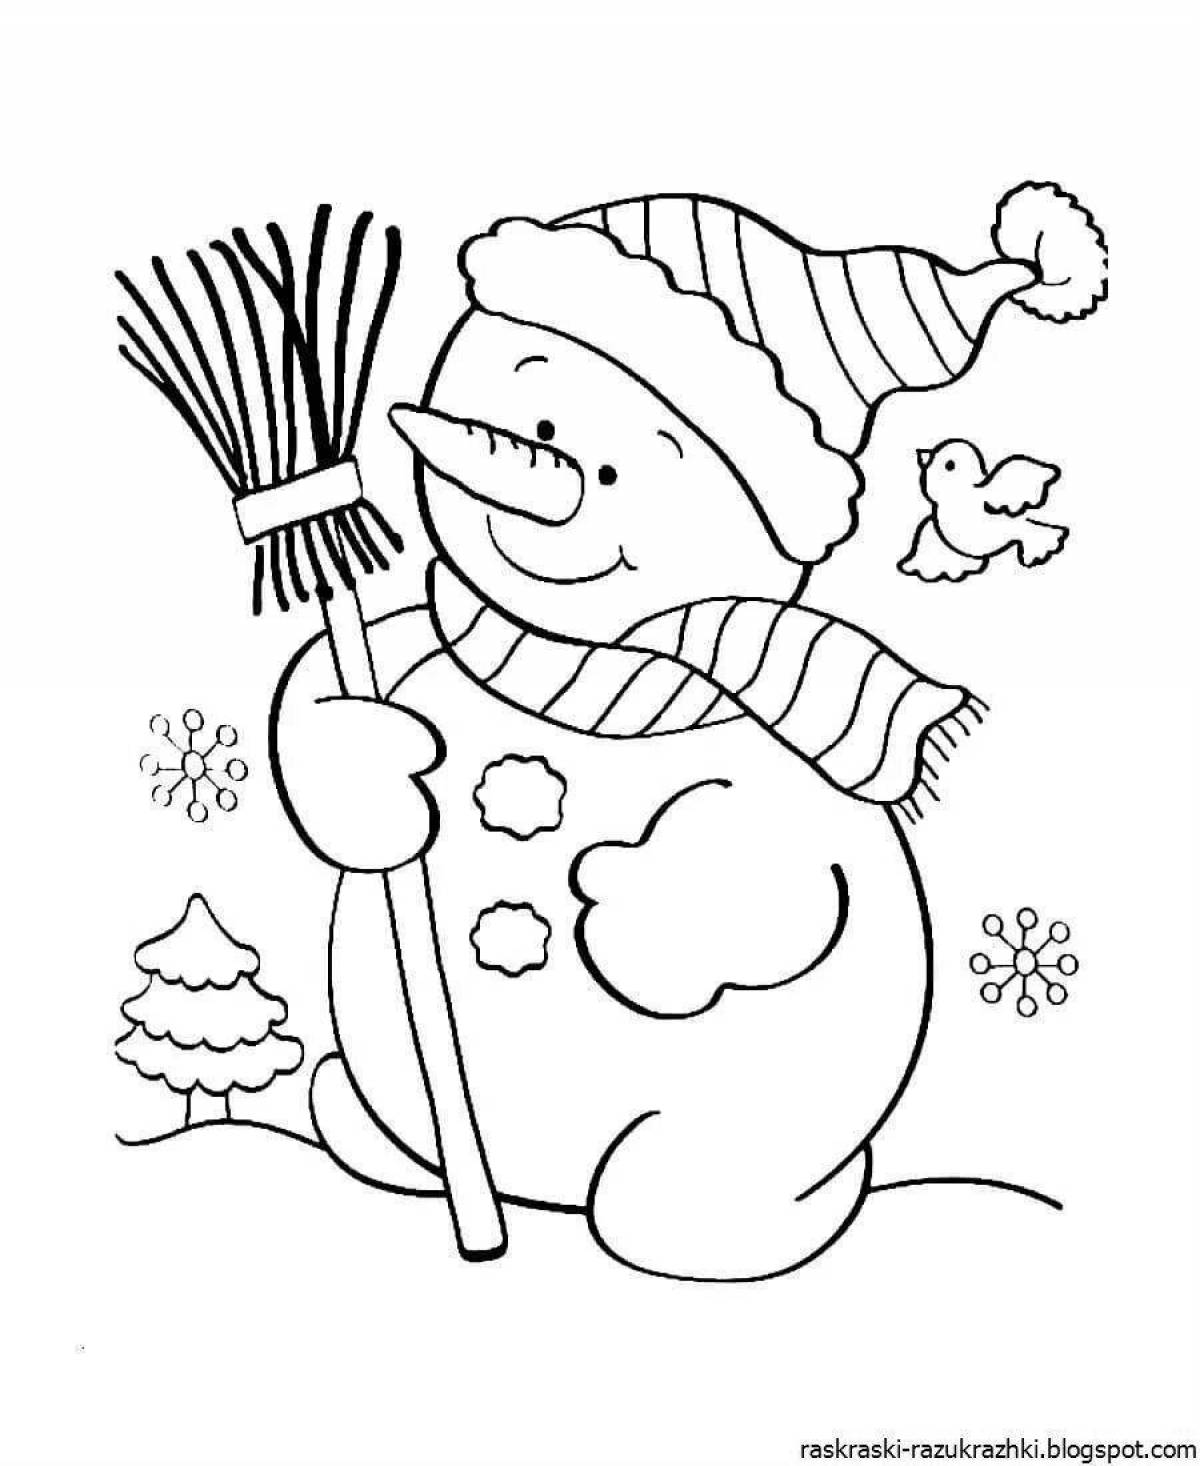 Riotous snowman coloring